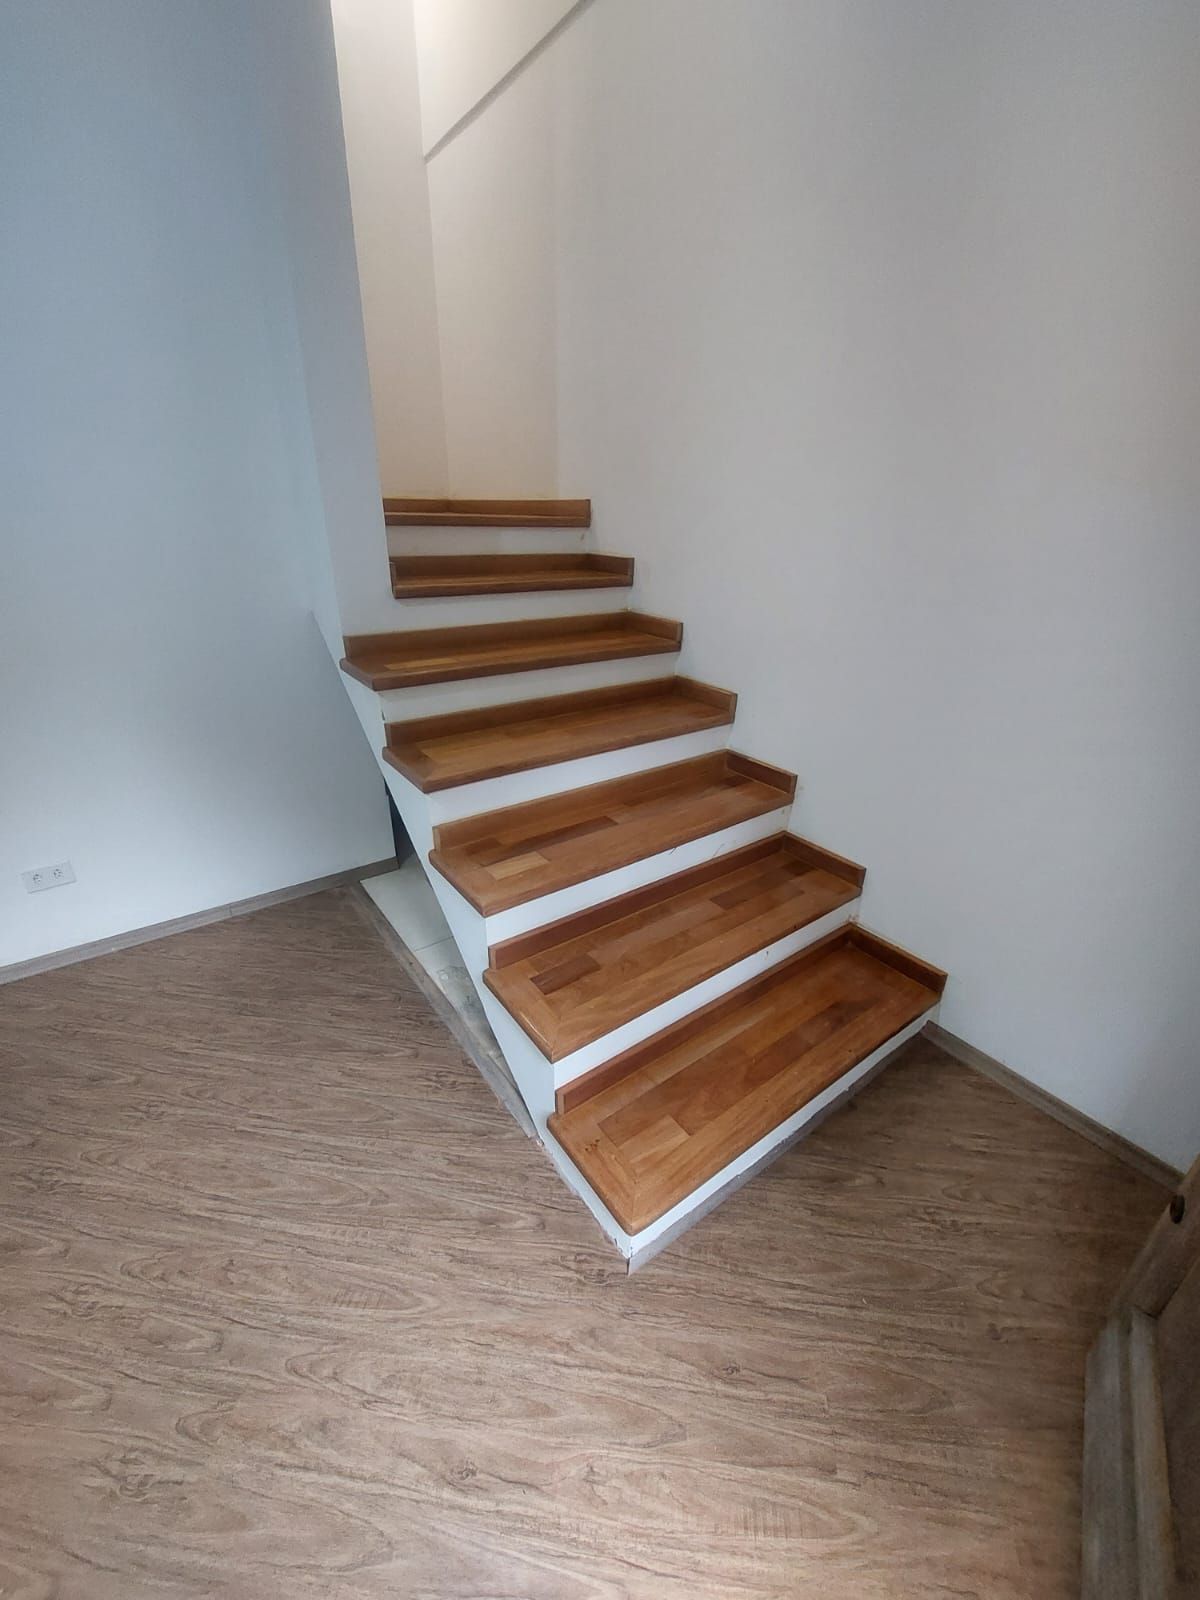 Escadas: Como projetá-las?